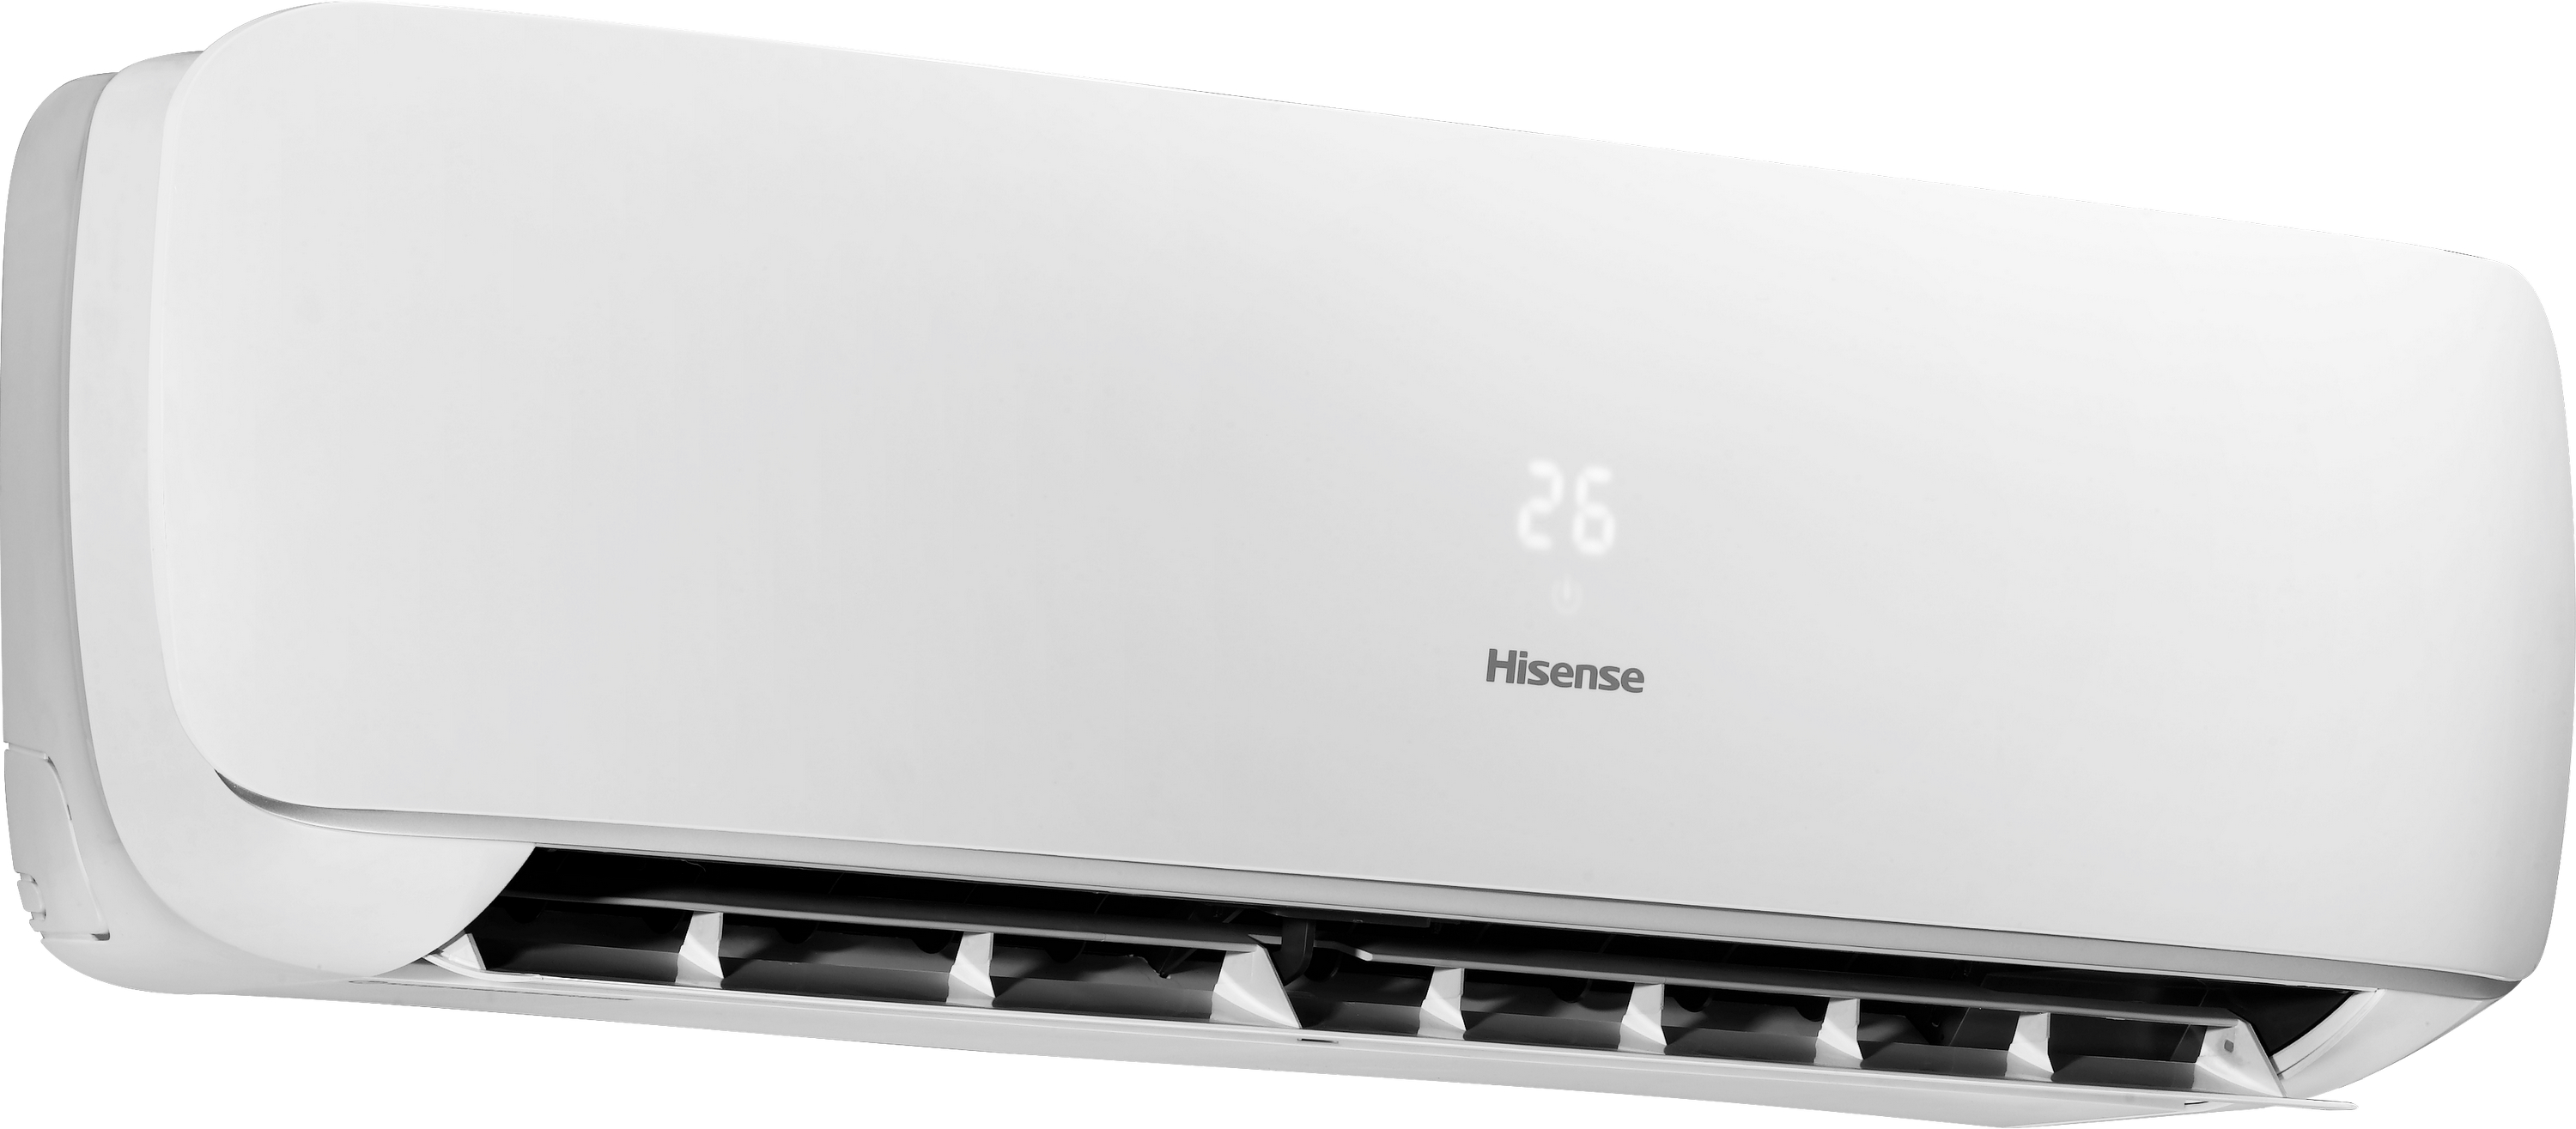 Кондиціонер спліт-система Hisense Apple Pie R32 TG50XA0A характеристики - фотографія 7